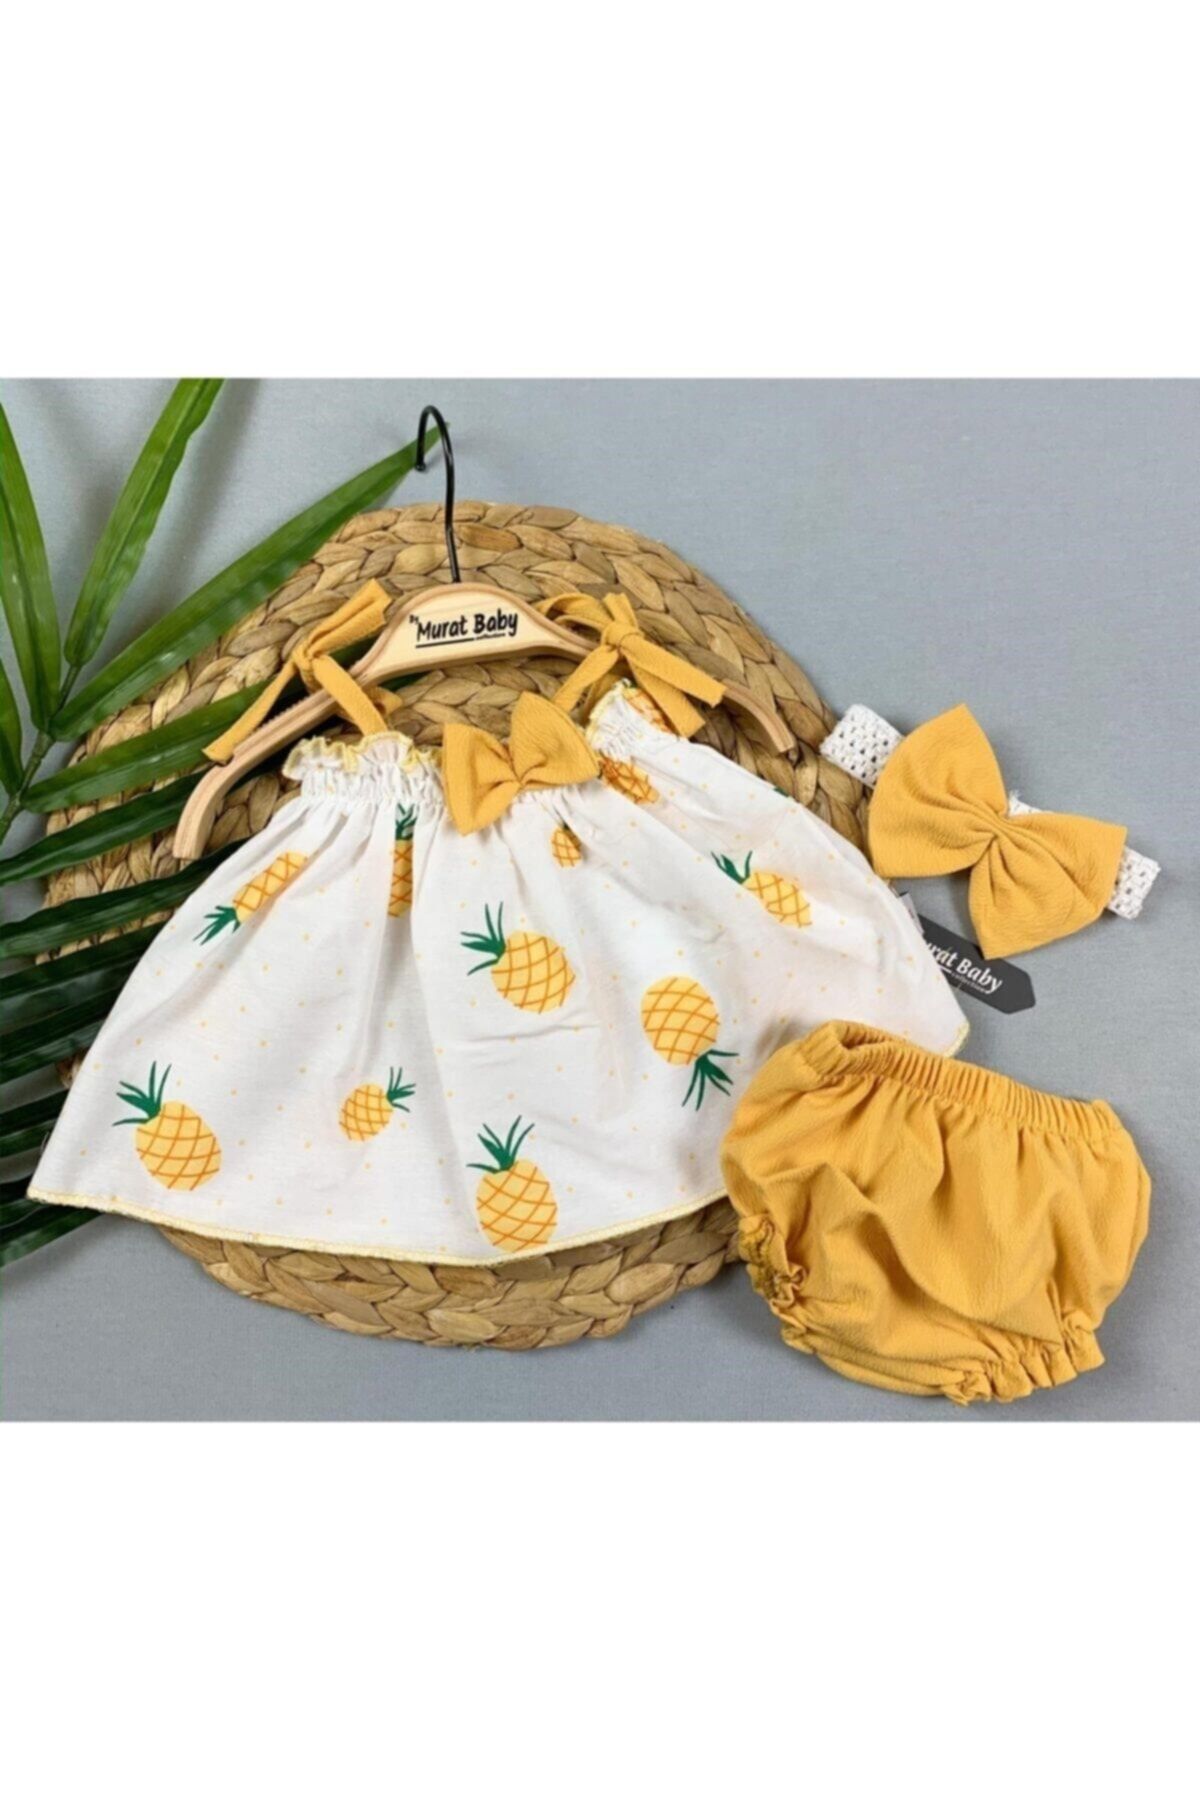 Murat Baby Kız Bebek Ananas Baskılı Elbise Set